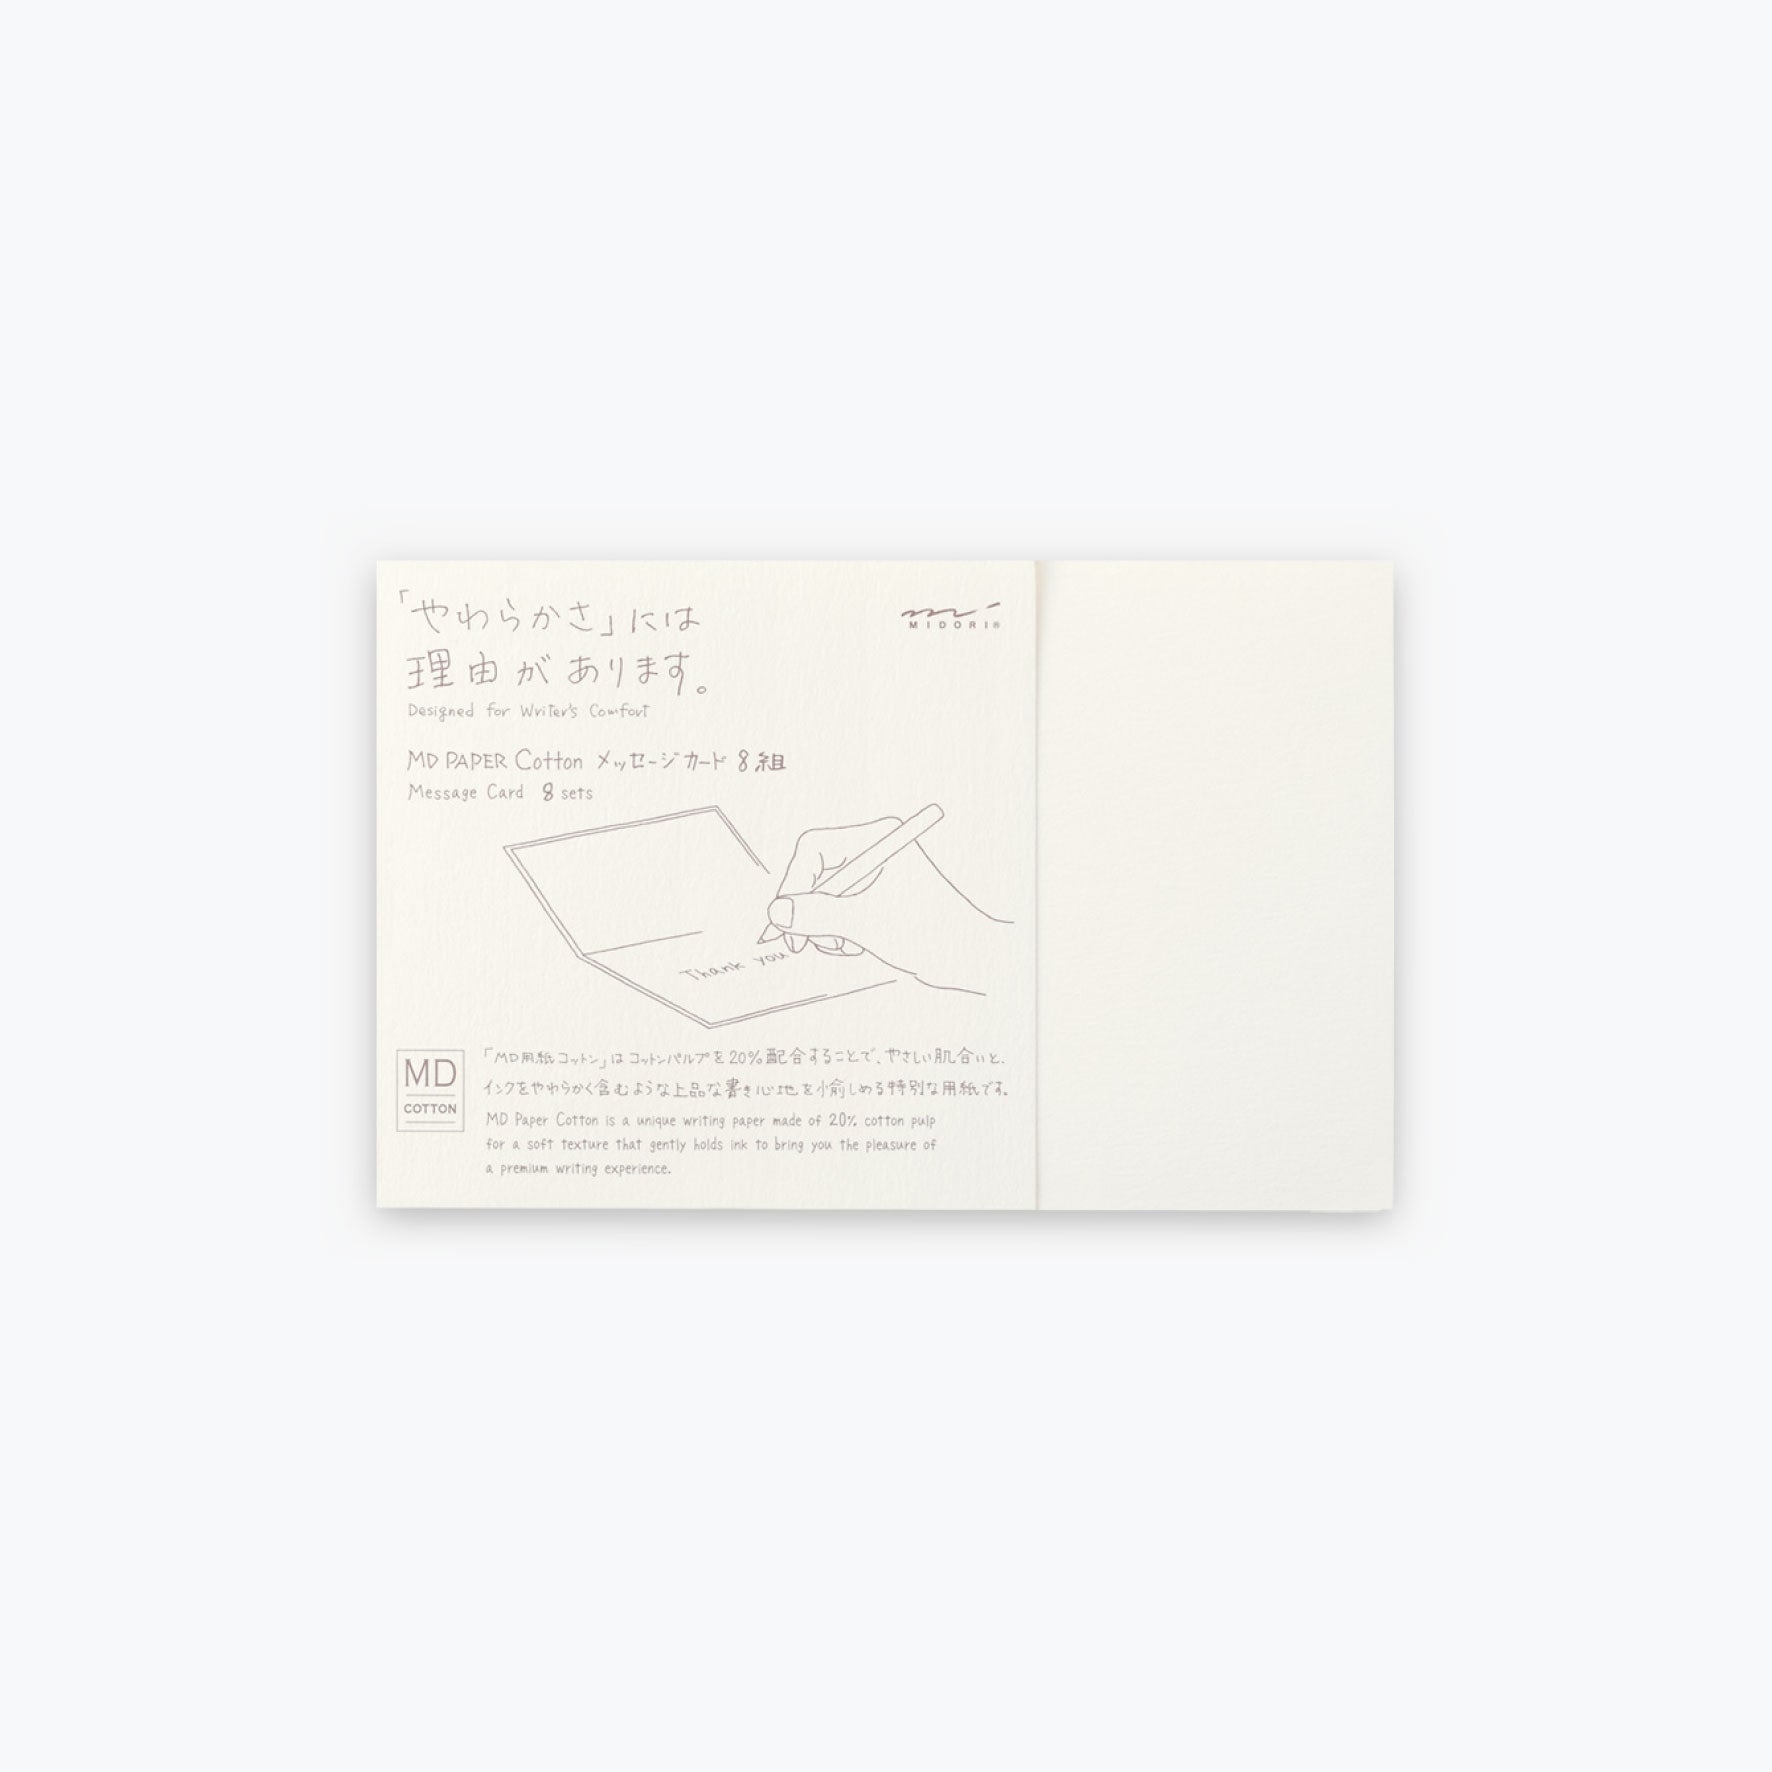 Midori - Card Set - Cotton <Outgoing>